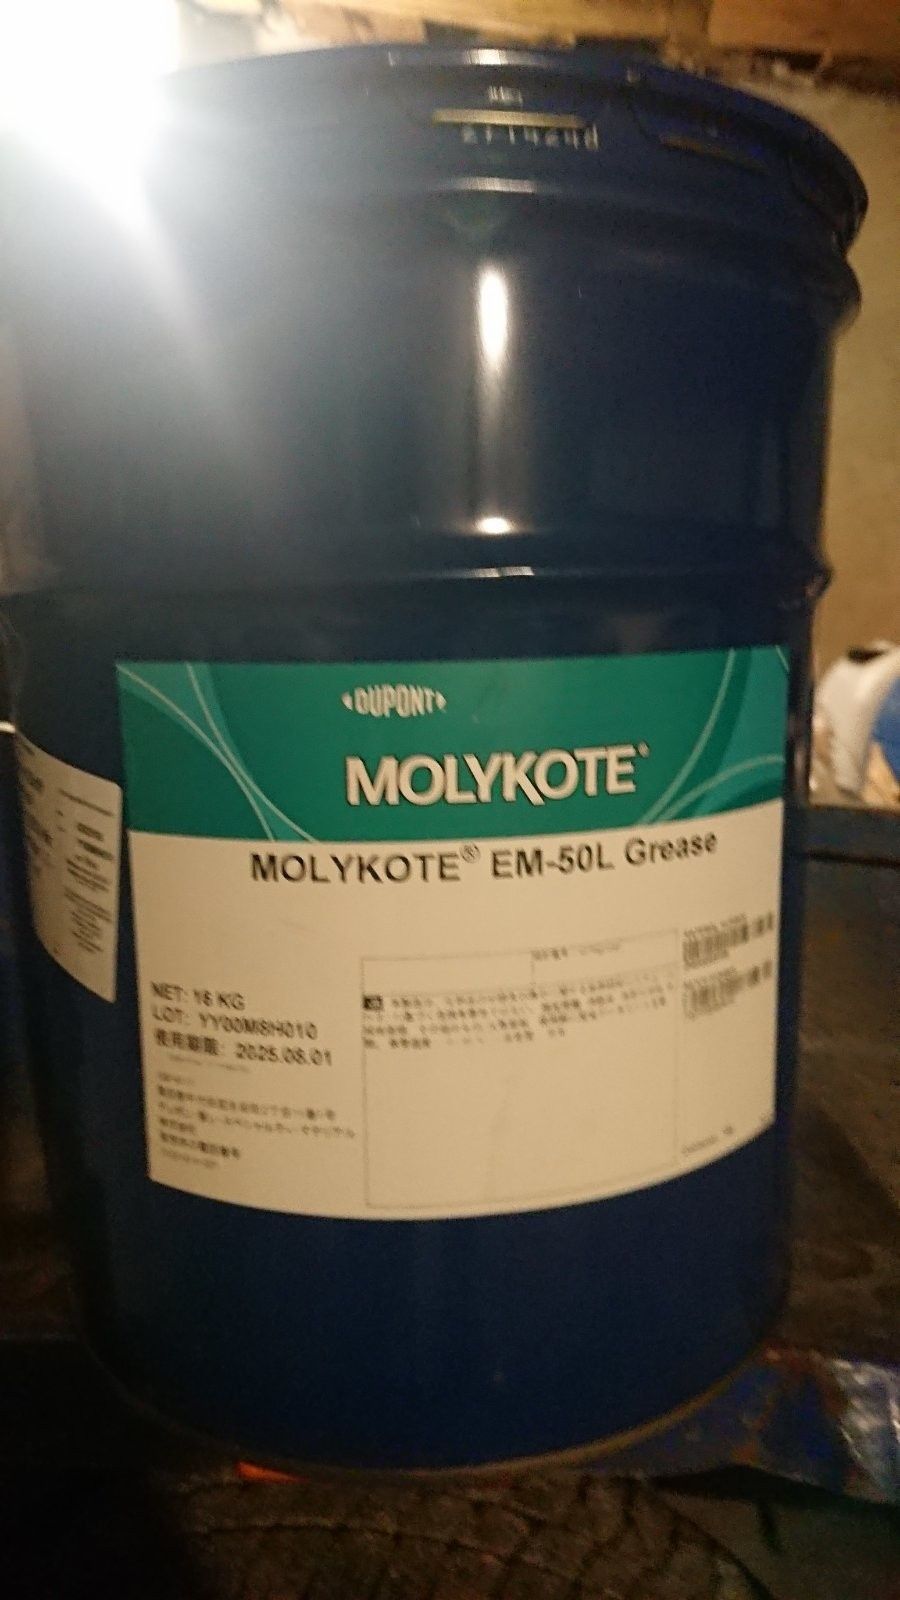 Molykote EM-50L 16кг — синтетическое углеводородное масло / литиевая м